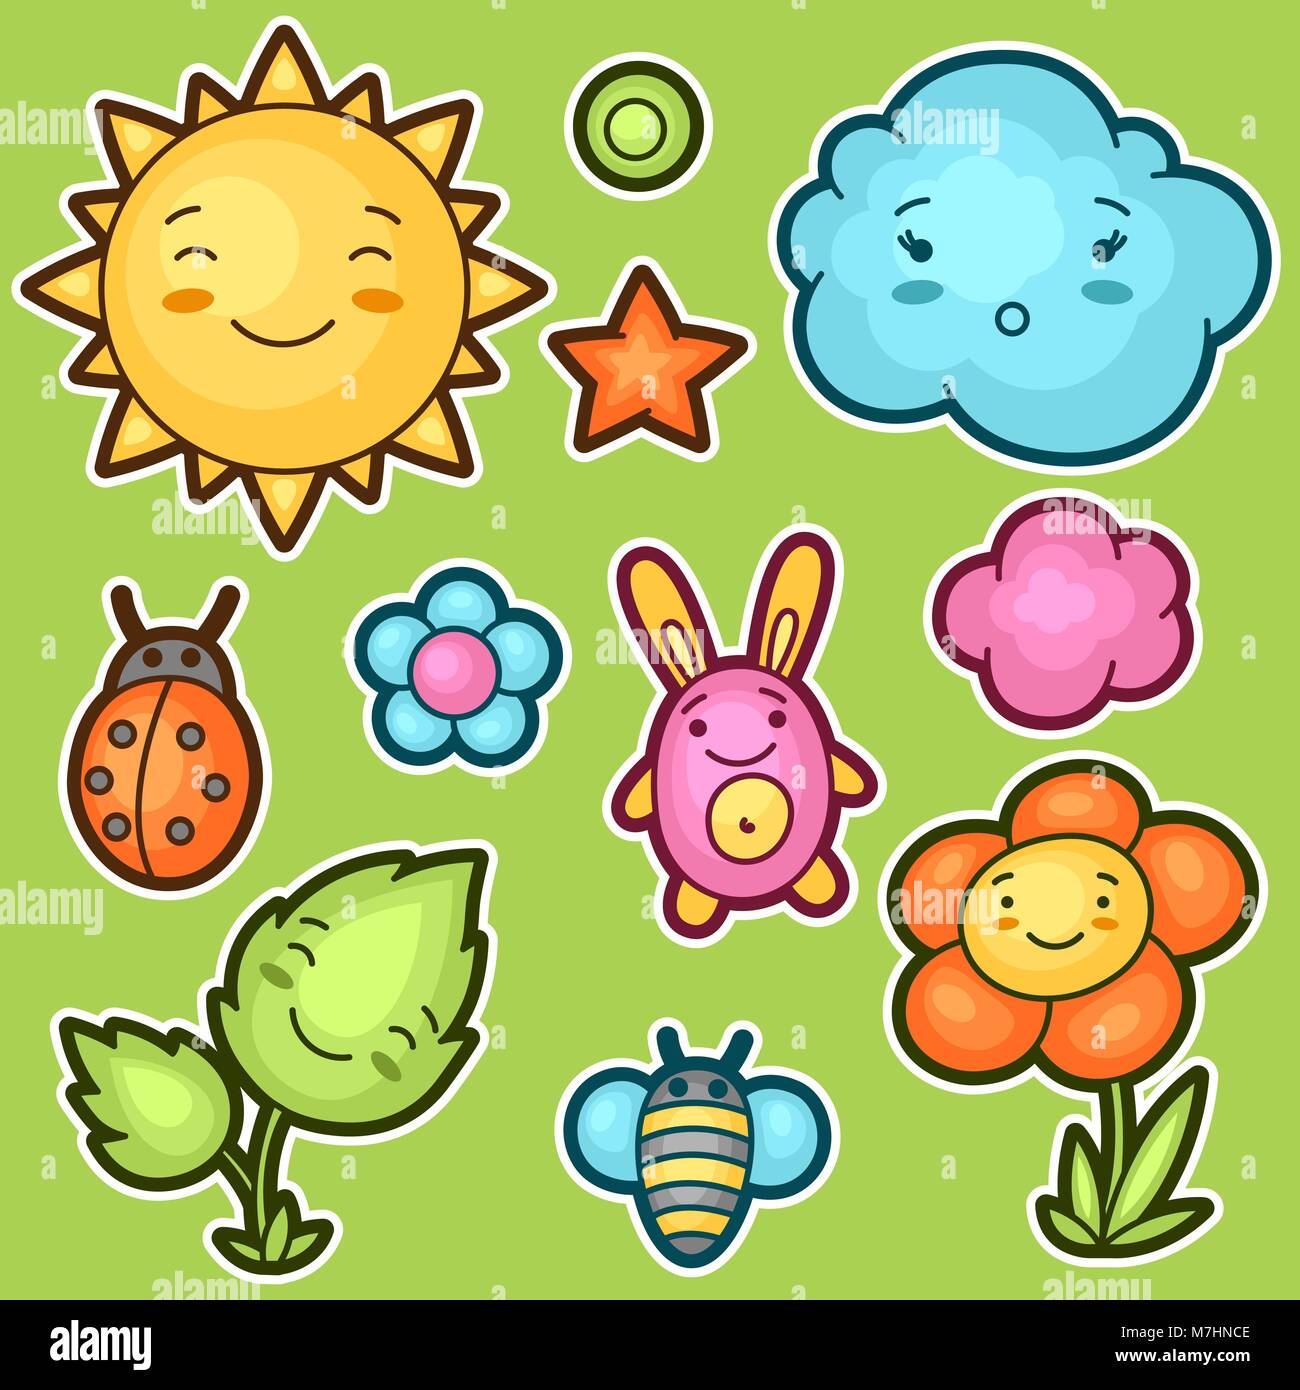 Satz von kawaii Doodles mit verschiedenen Gesichtsausdrücke. Frühjahrskollektion fröhliche Zeichentrickfiguren Sonne, Wolke, Blume, Blatt, Käfer und dekorative Objekte Stock Vektor